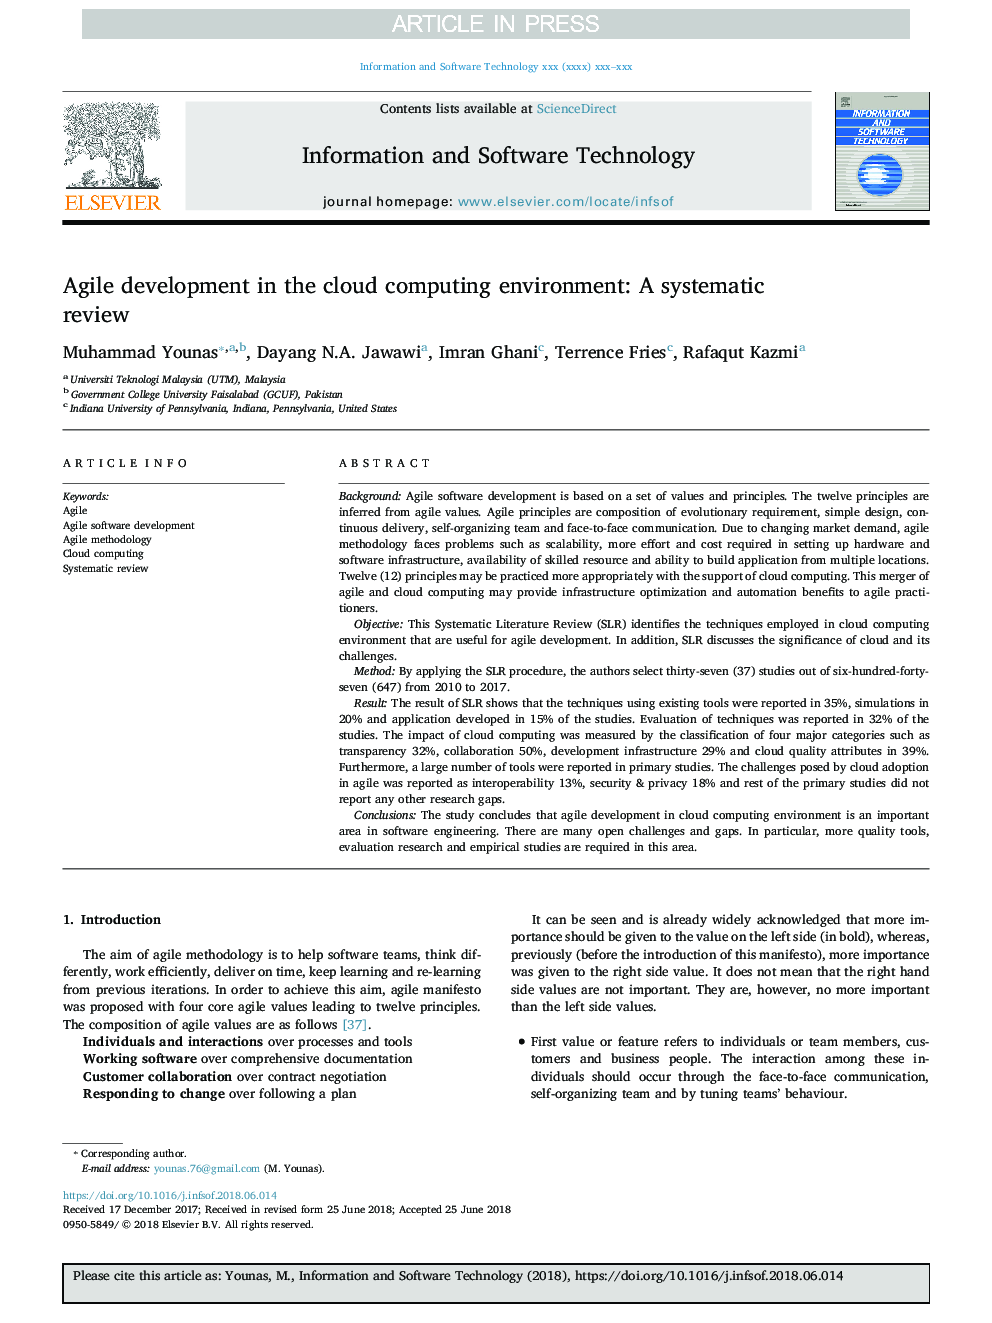 توسعه پایدار در محیط محاسبات ابری: بررسی سیستماتیک